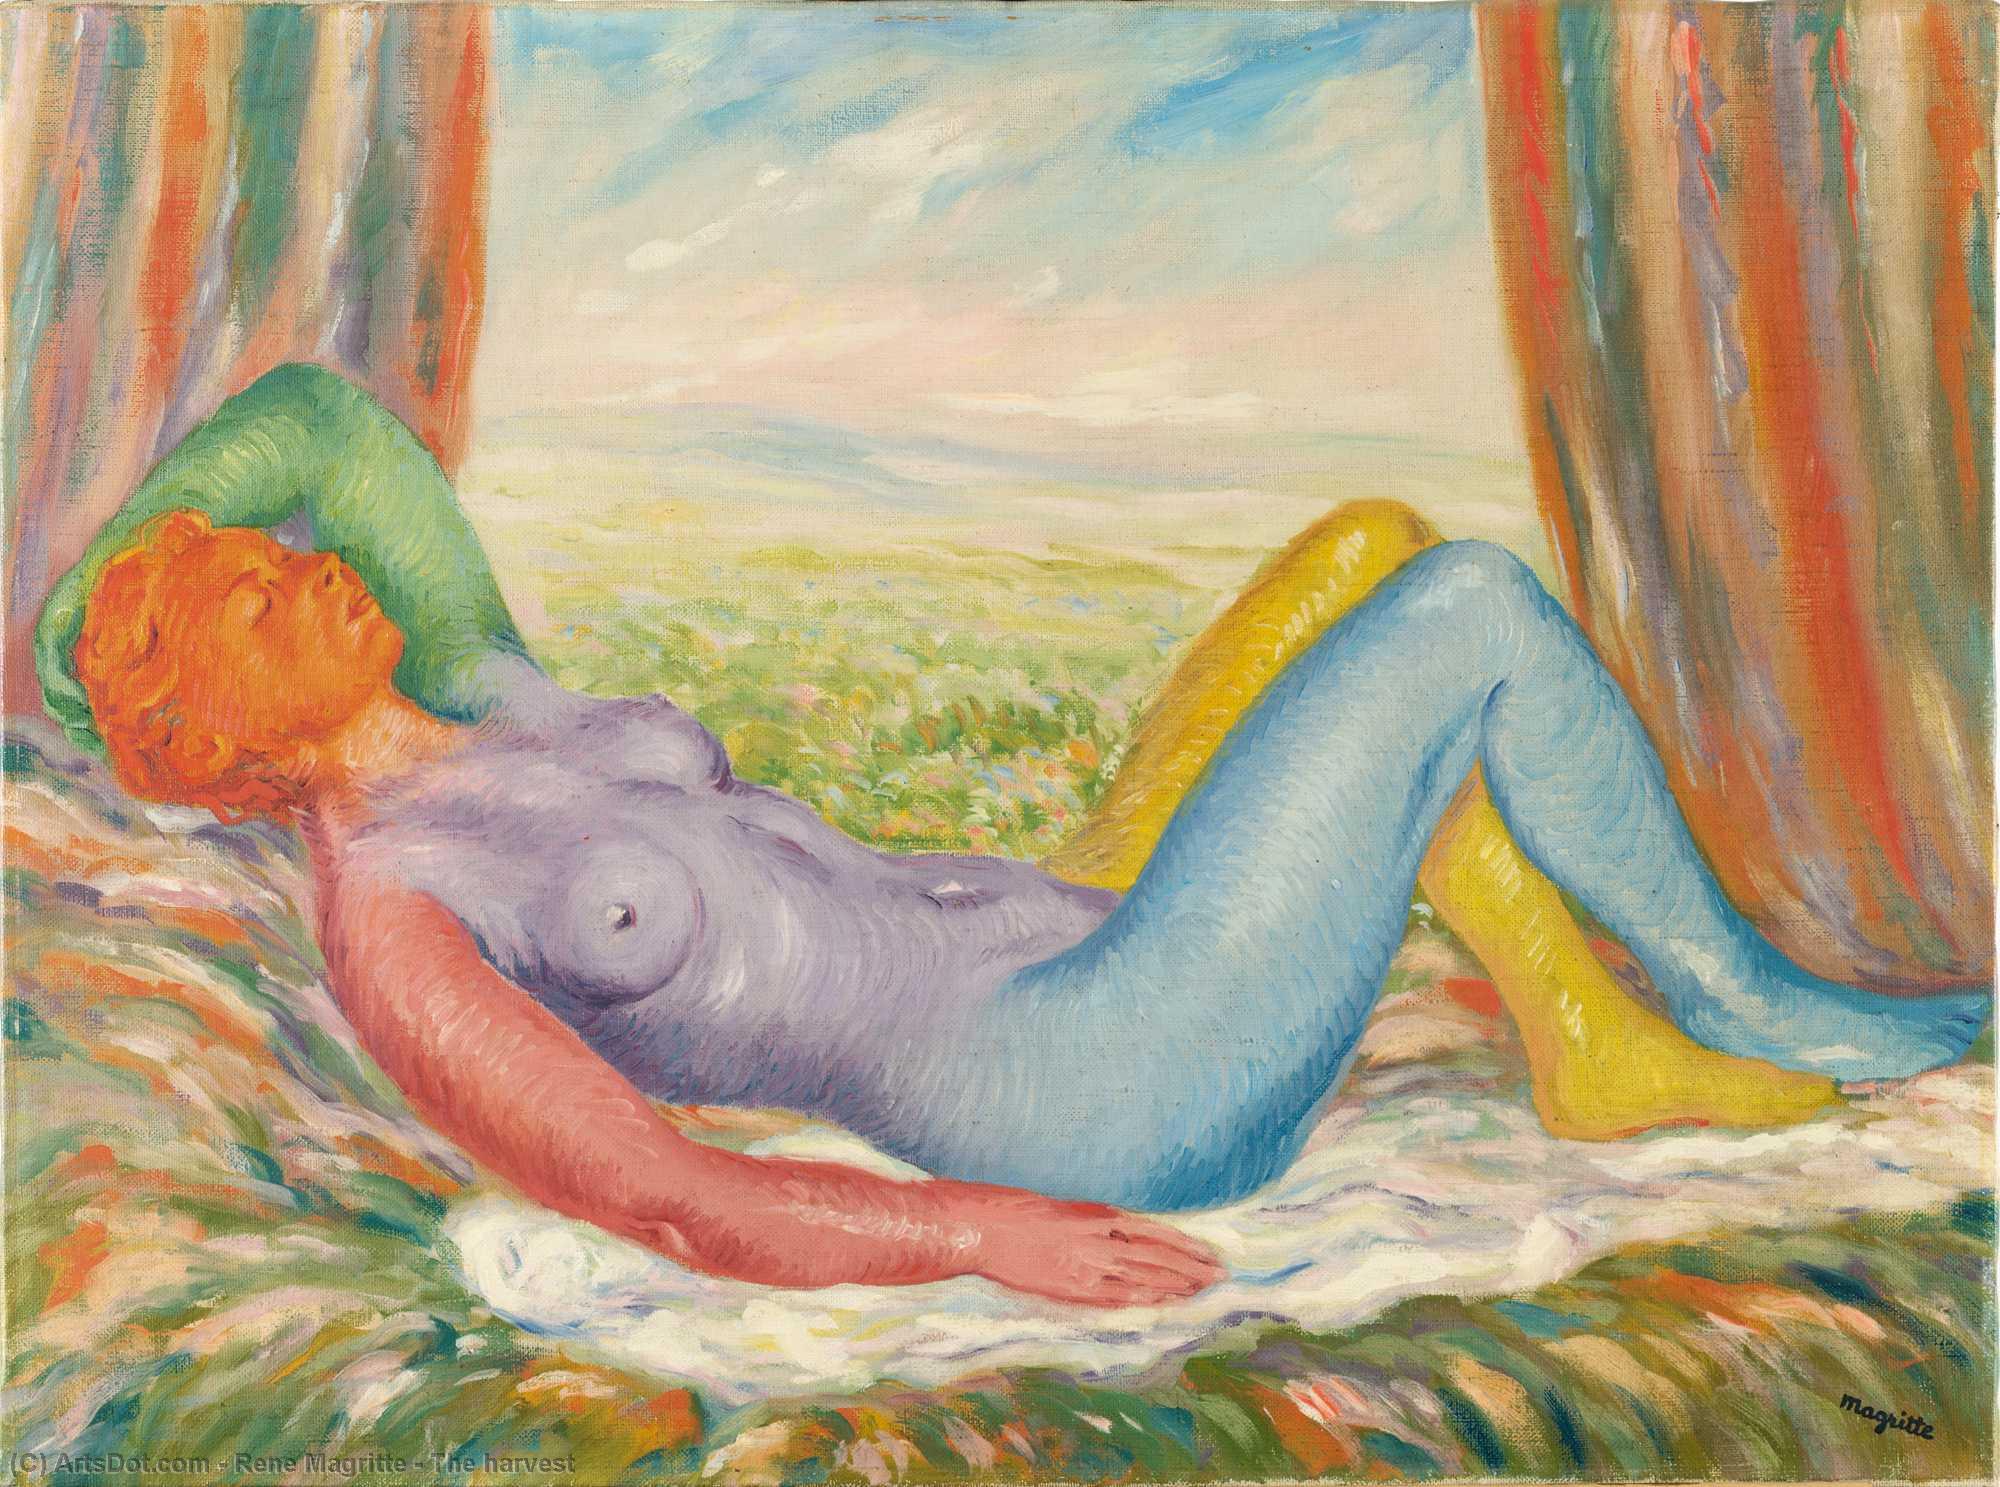 Wikioo.org - Bách khoa toàn thư về mỹ thuật - Vẽ tranh, Tác phẩm nghệ thuật Rene Magritte - The harvest